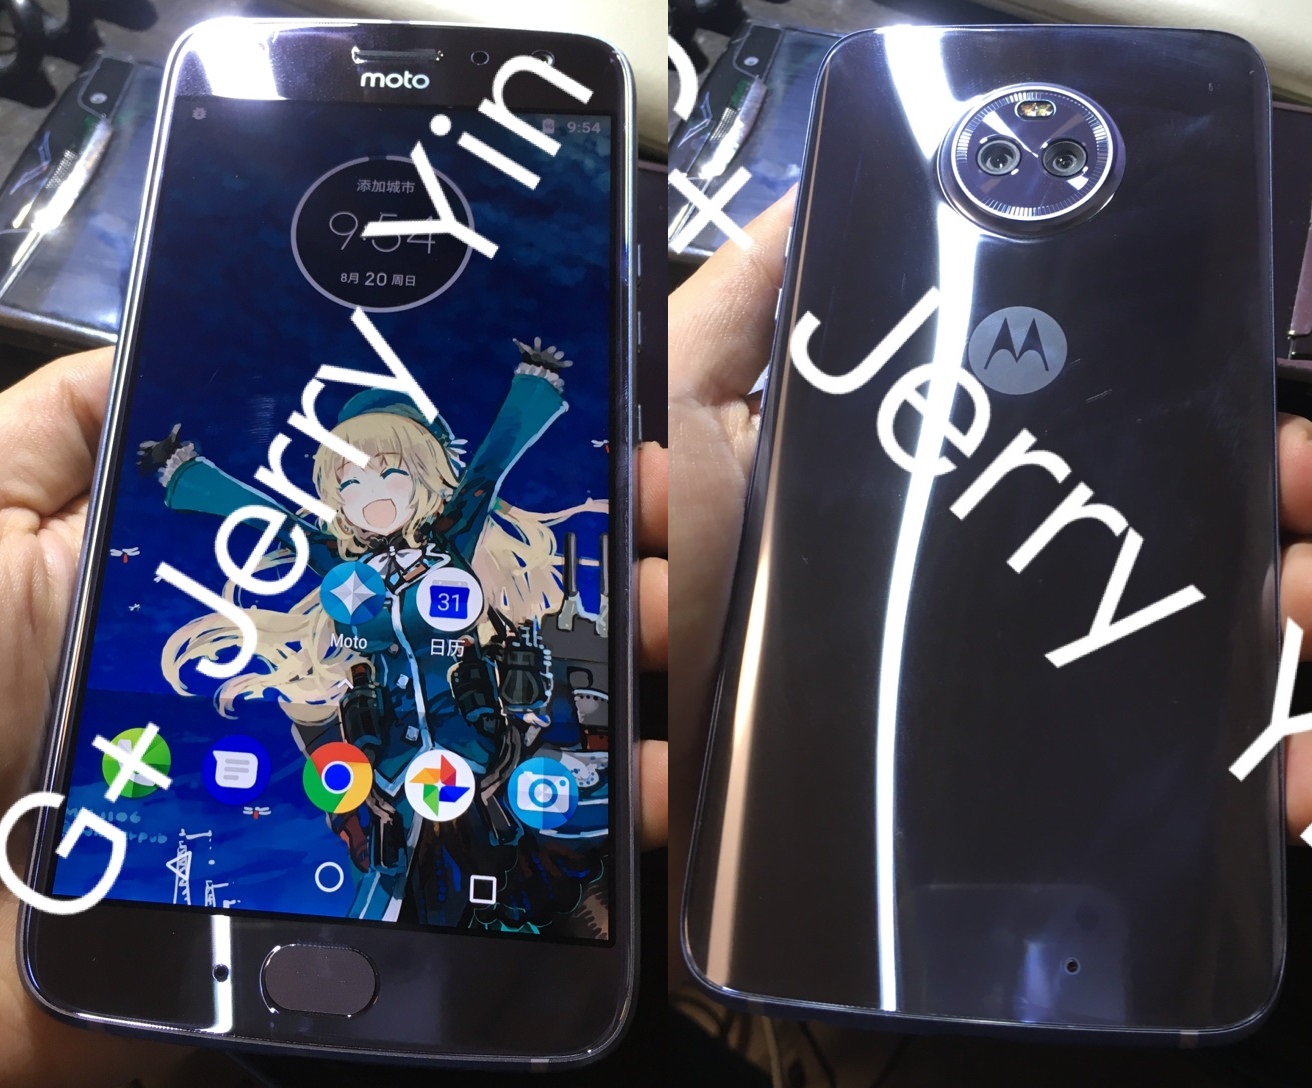 Full-body image shot of Motorola Moto X4 leaked online